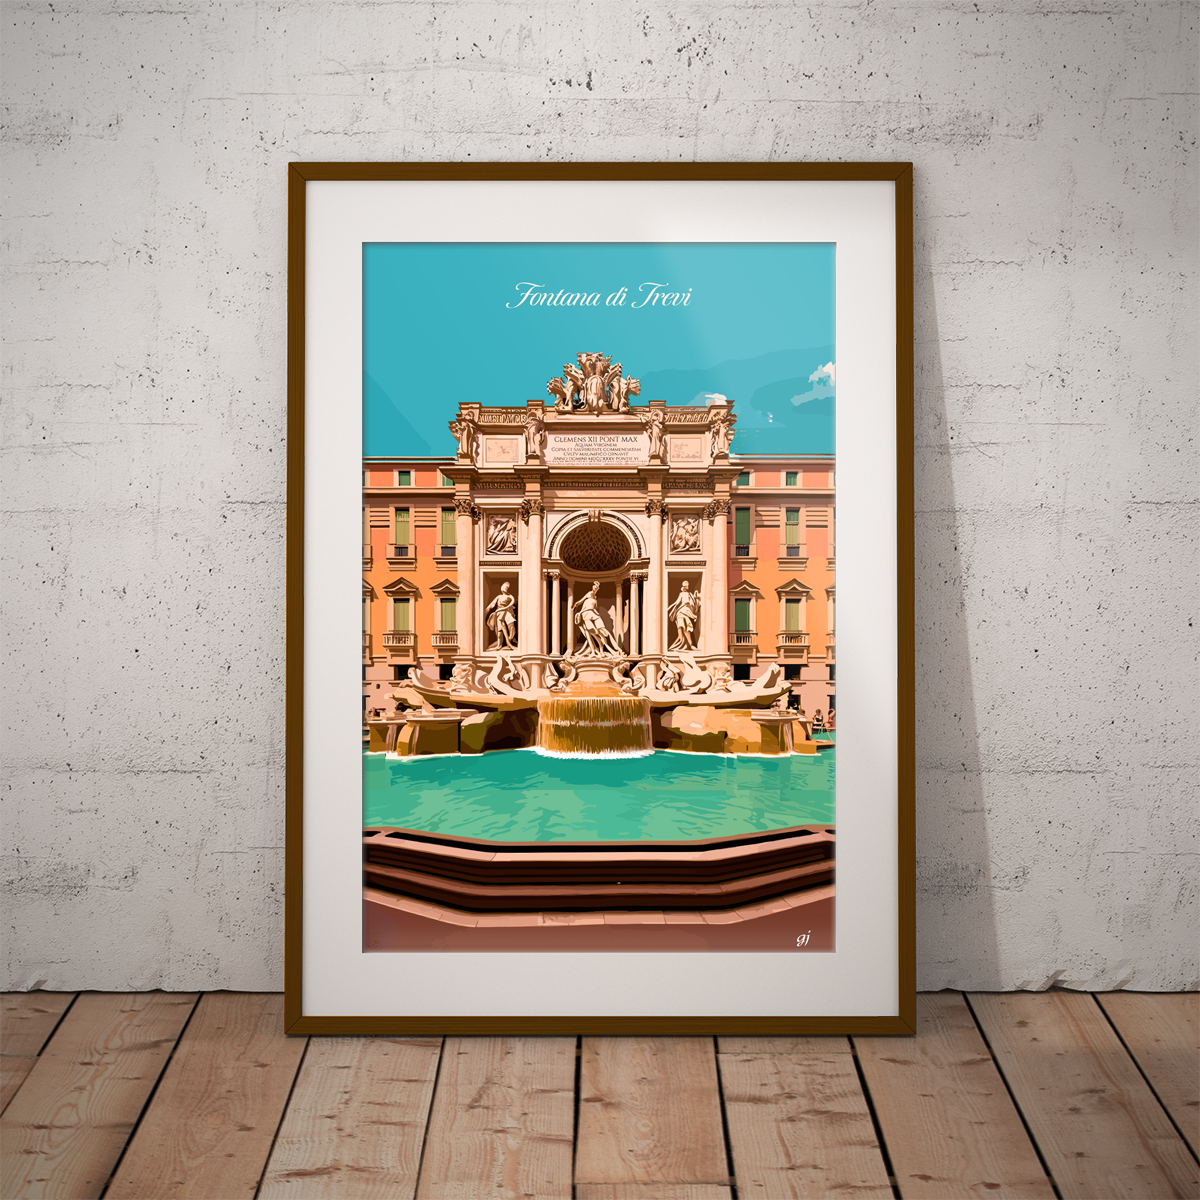 Roma - Fontana di Trevi poster by bon voyage design